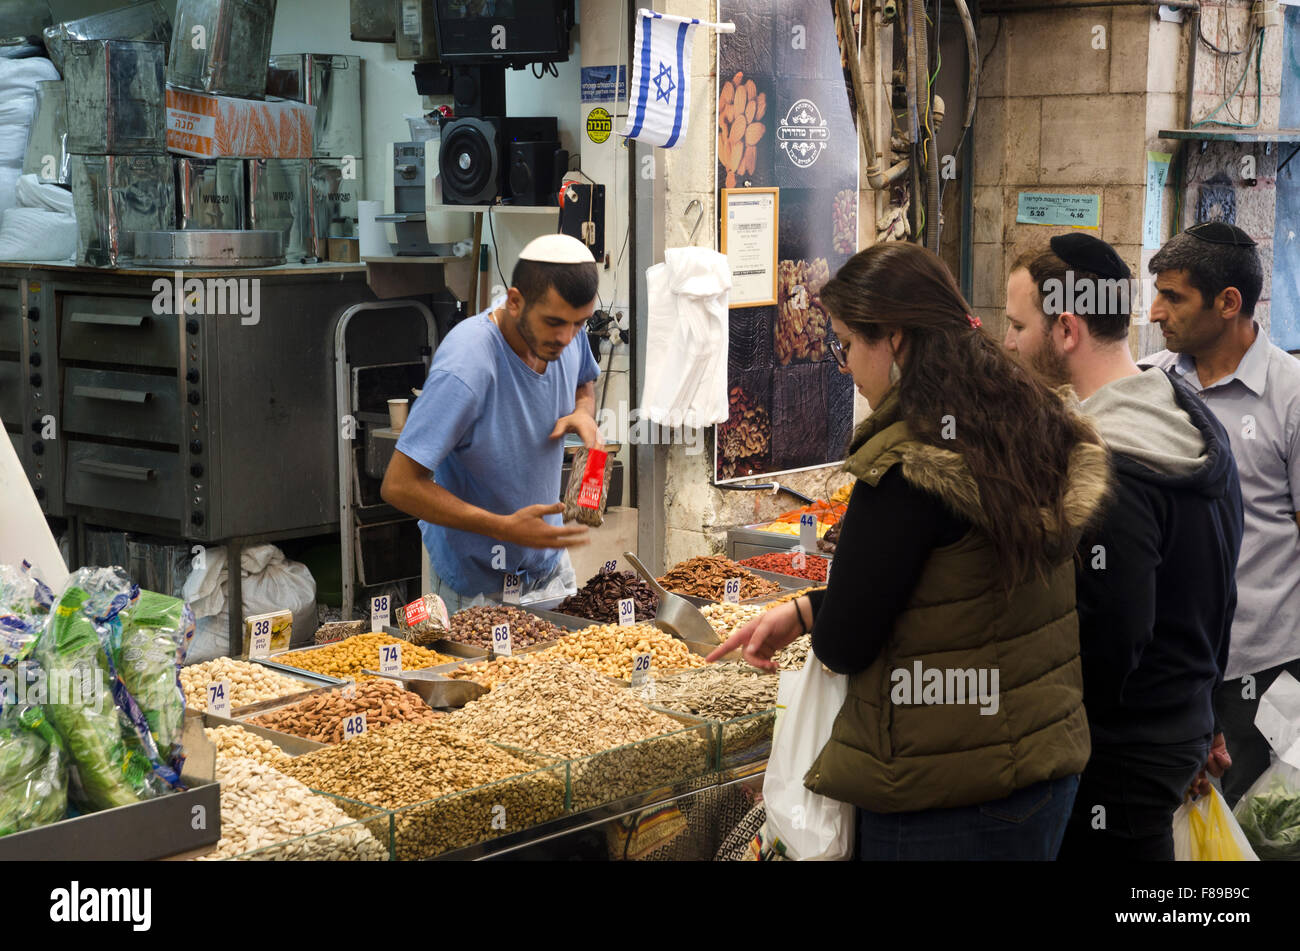 Mahane Yehuda Market, West Jerusalem, Israel/Palestine Stock Photo